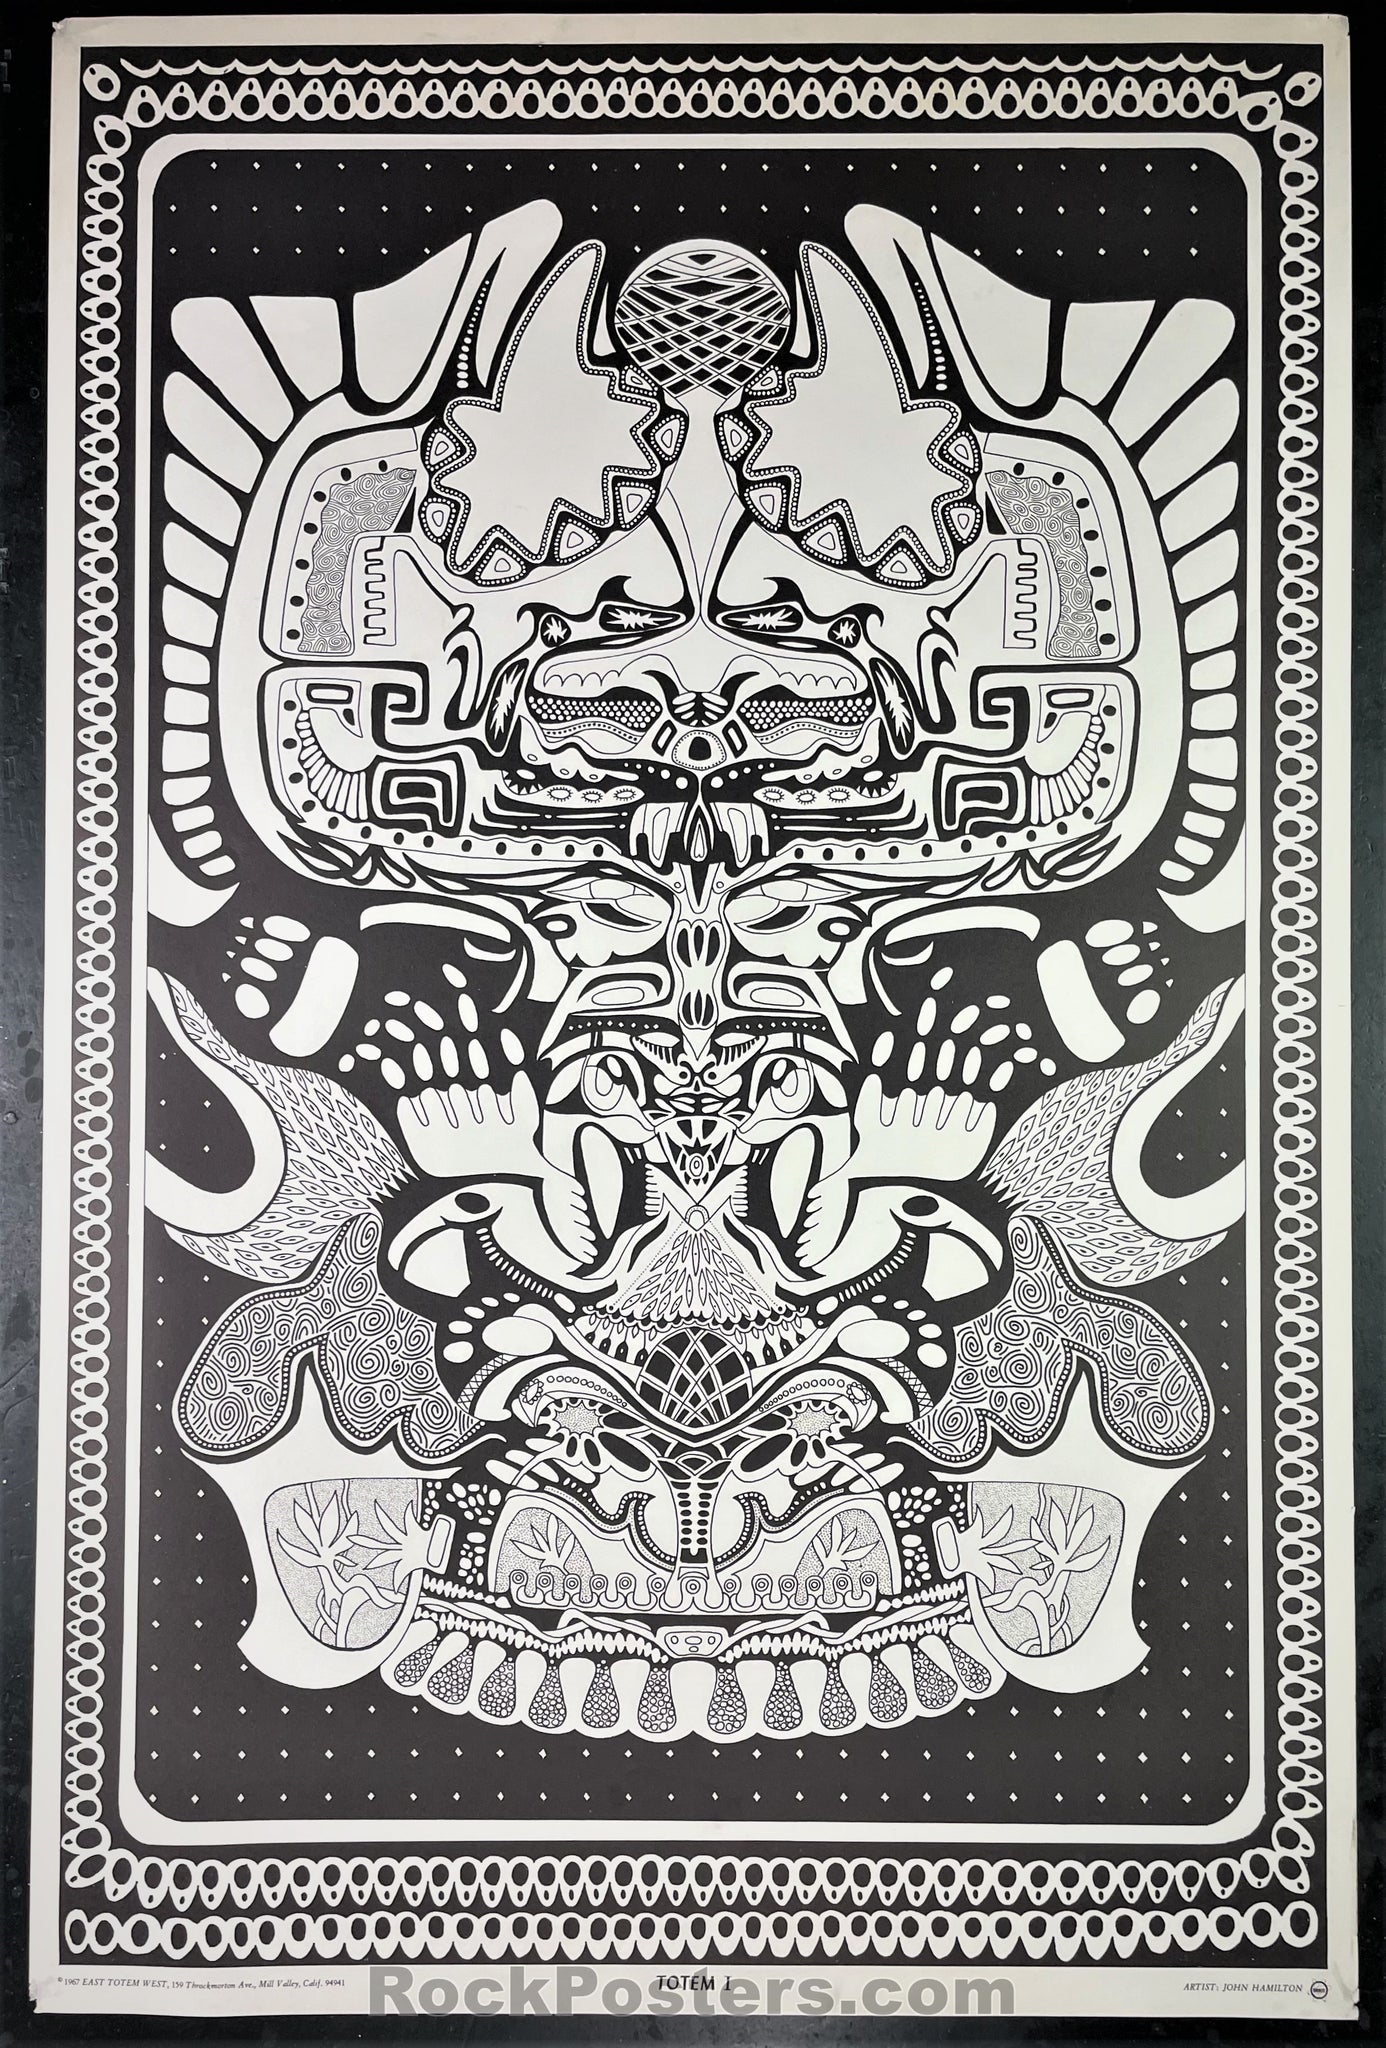 AUCTION - East Totem West - Totem 1 - 1960s Head Shop Poster - Excellent